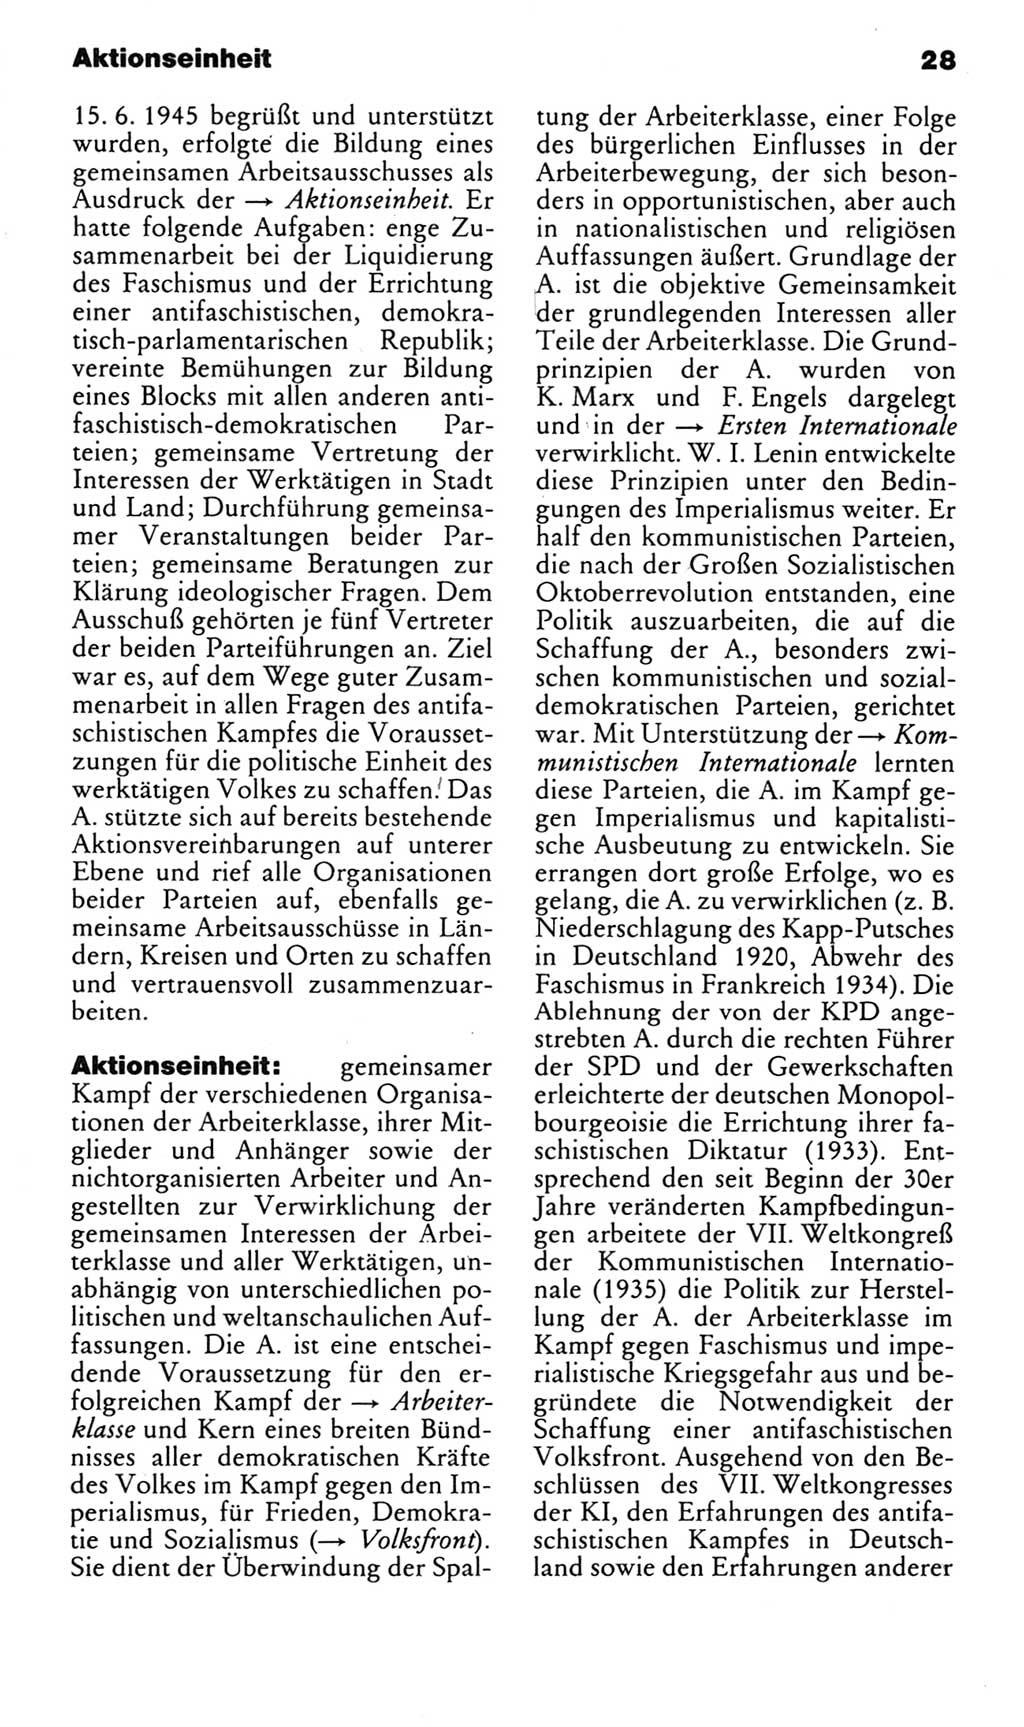 Kleines politisches Wörterbuch [Deutsche Demokratische Republik (DDR)] 1985, Seite 28 (Kl. pol. Wb. DDR 1985, S. 28)